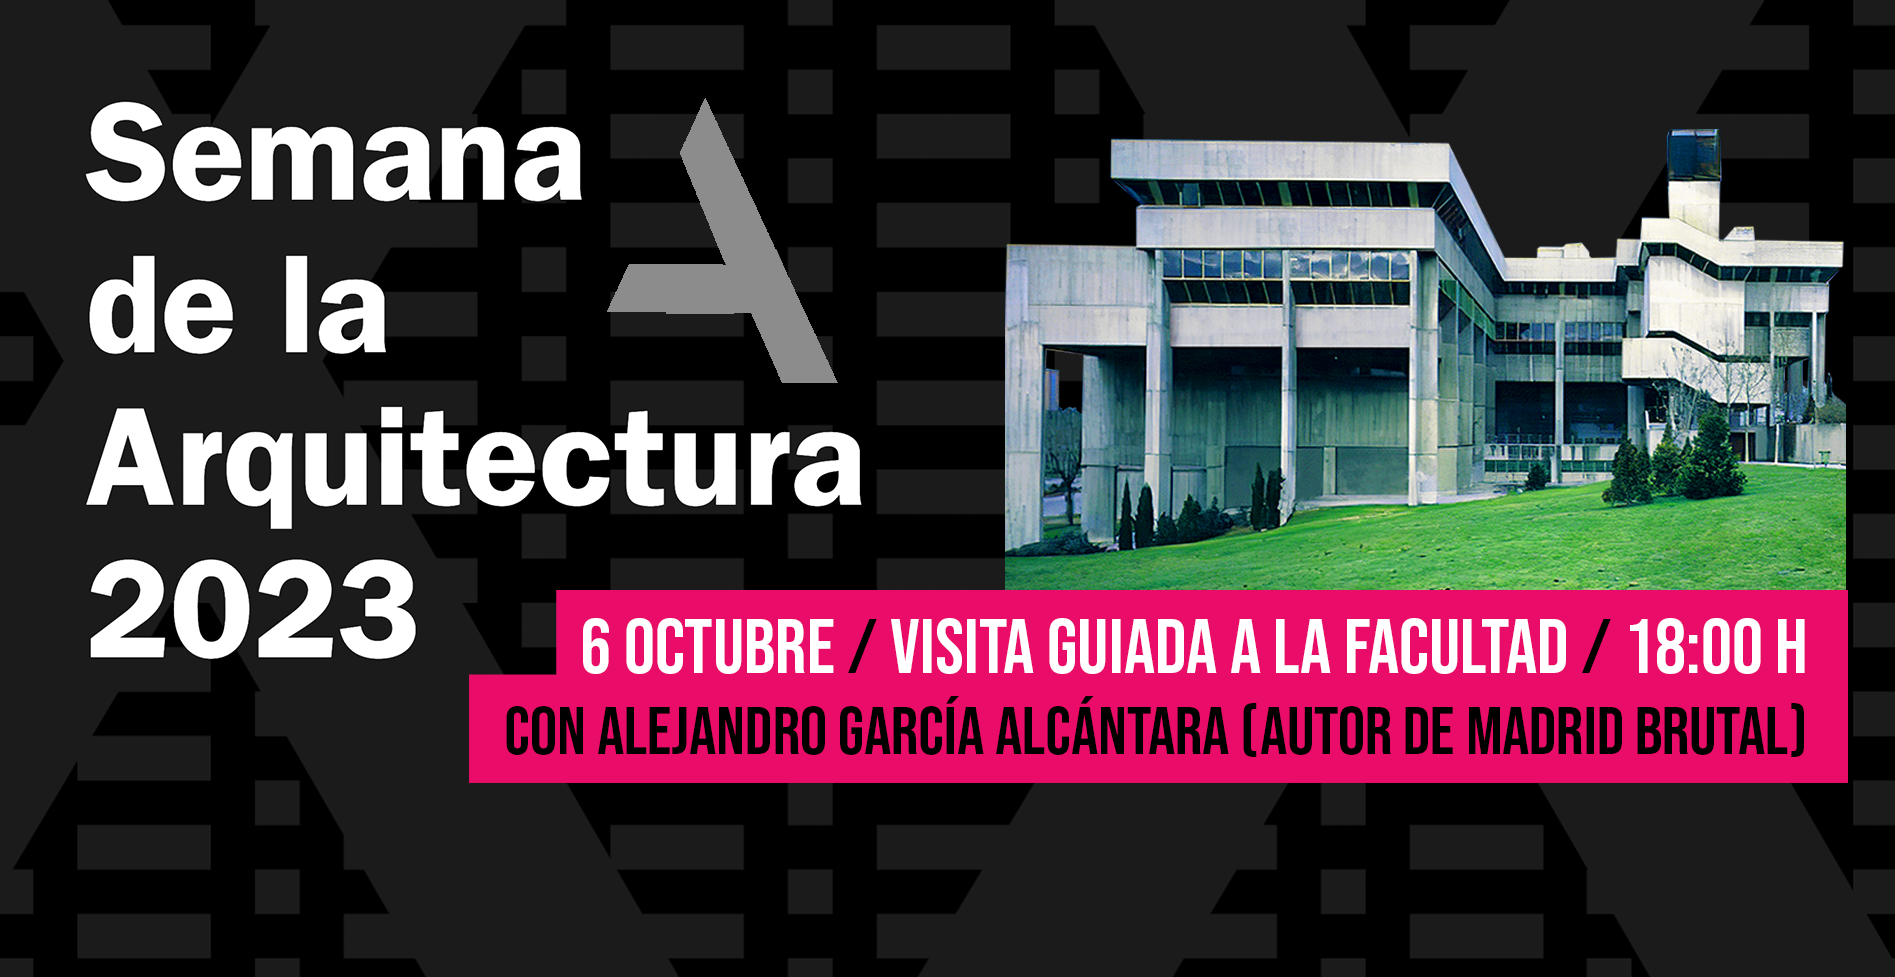 Visita guiada por la Facultad el pasado viernes 6 de octubre, por la #SemanaArquitectura2023